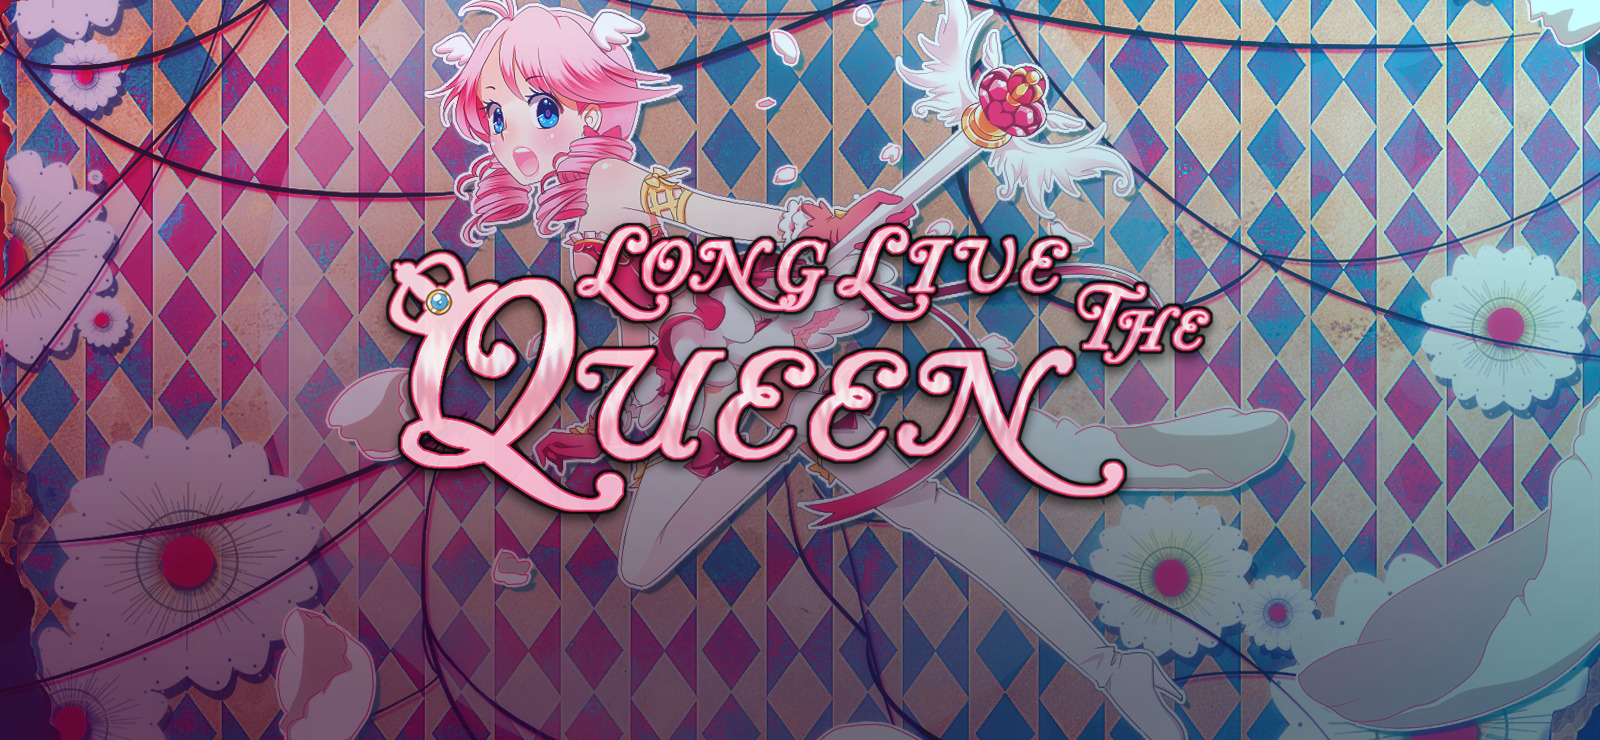 Long Live Queen